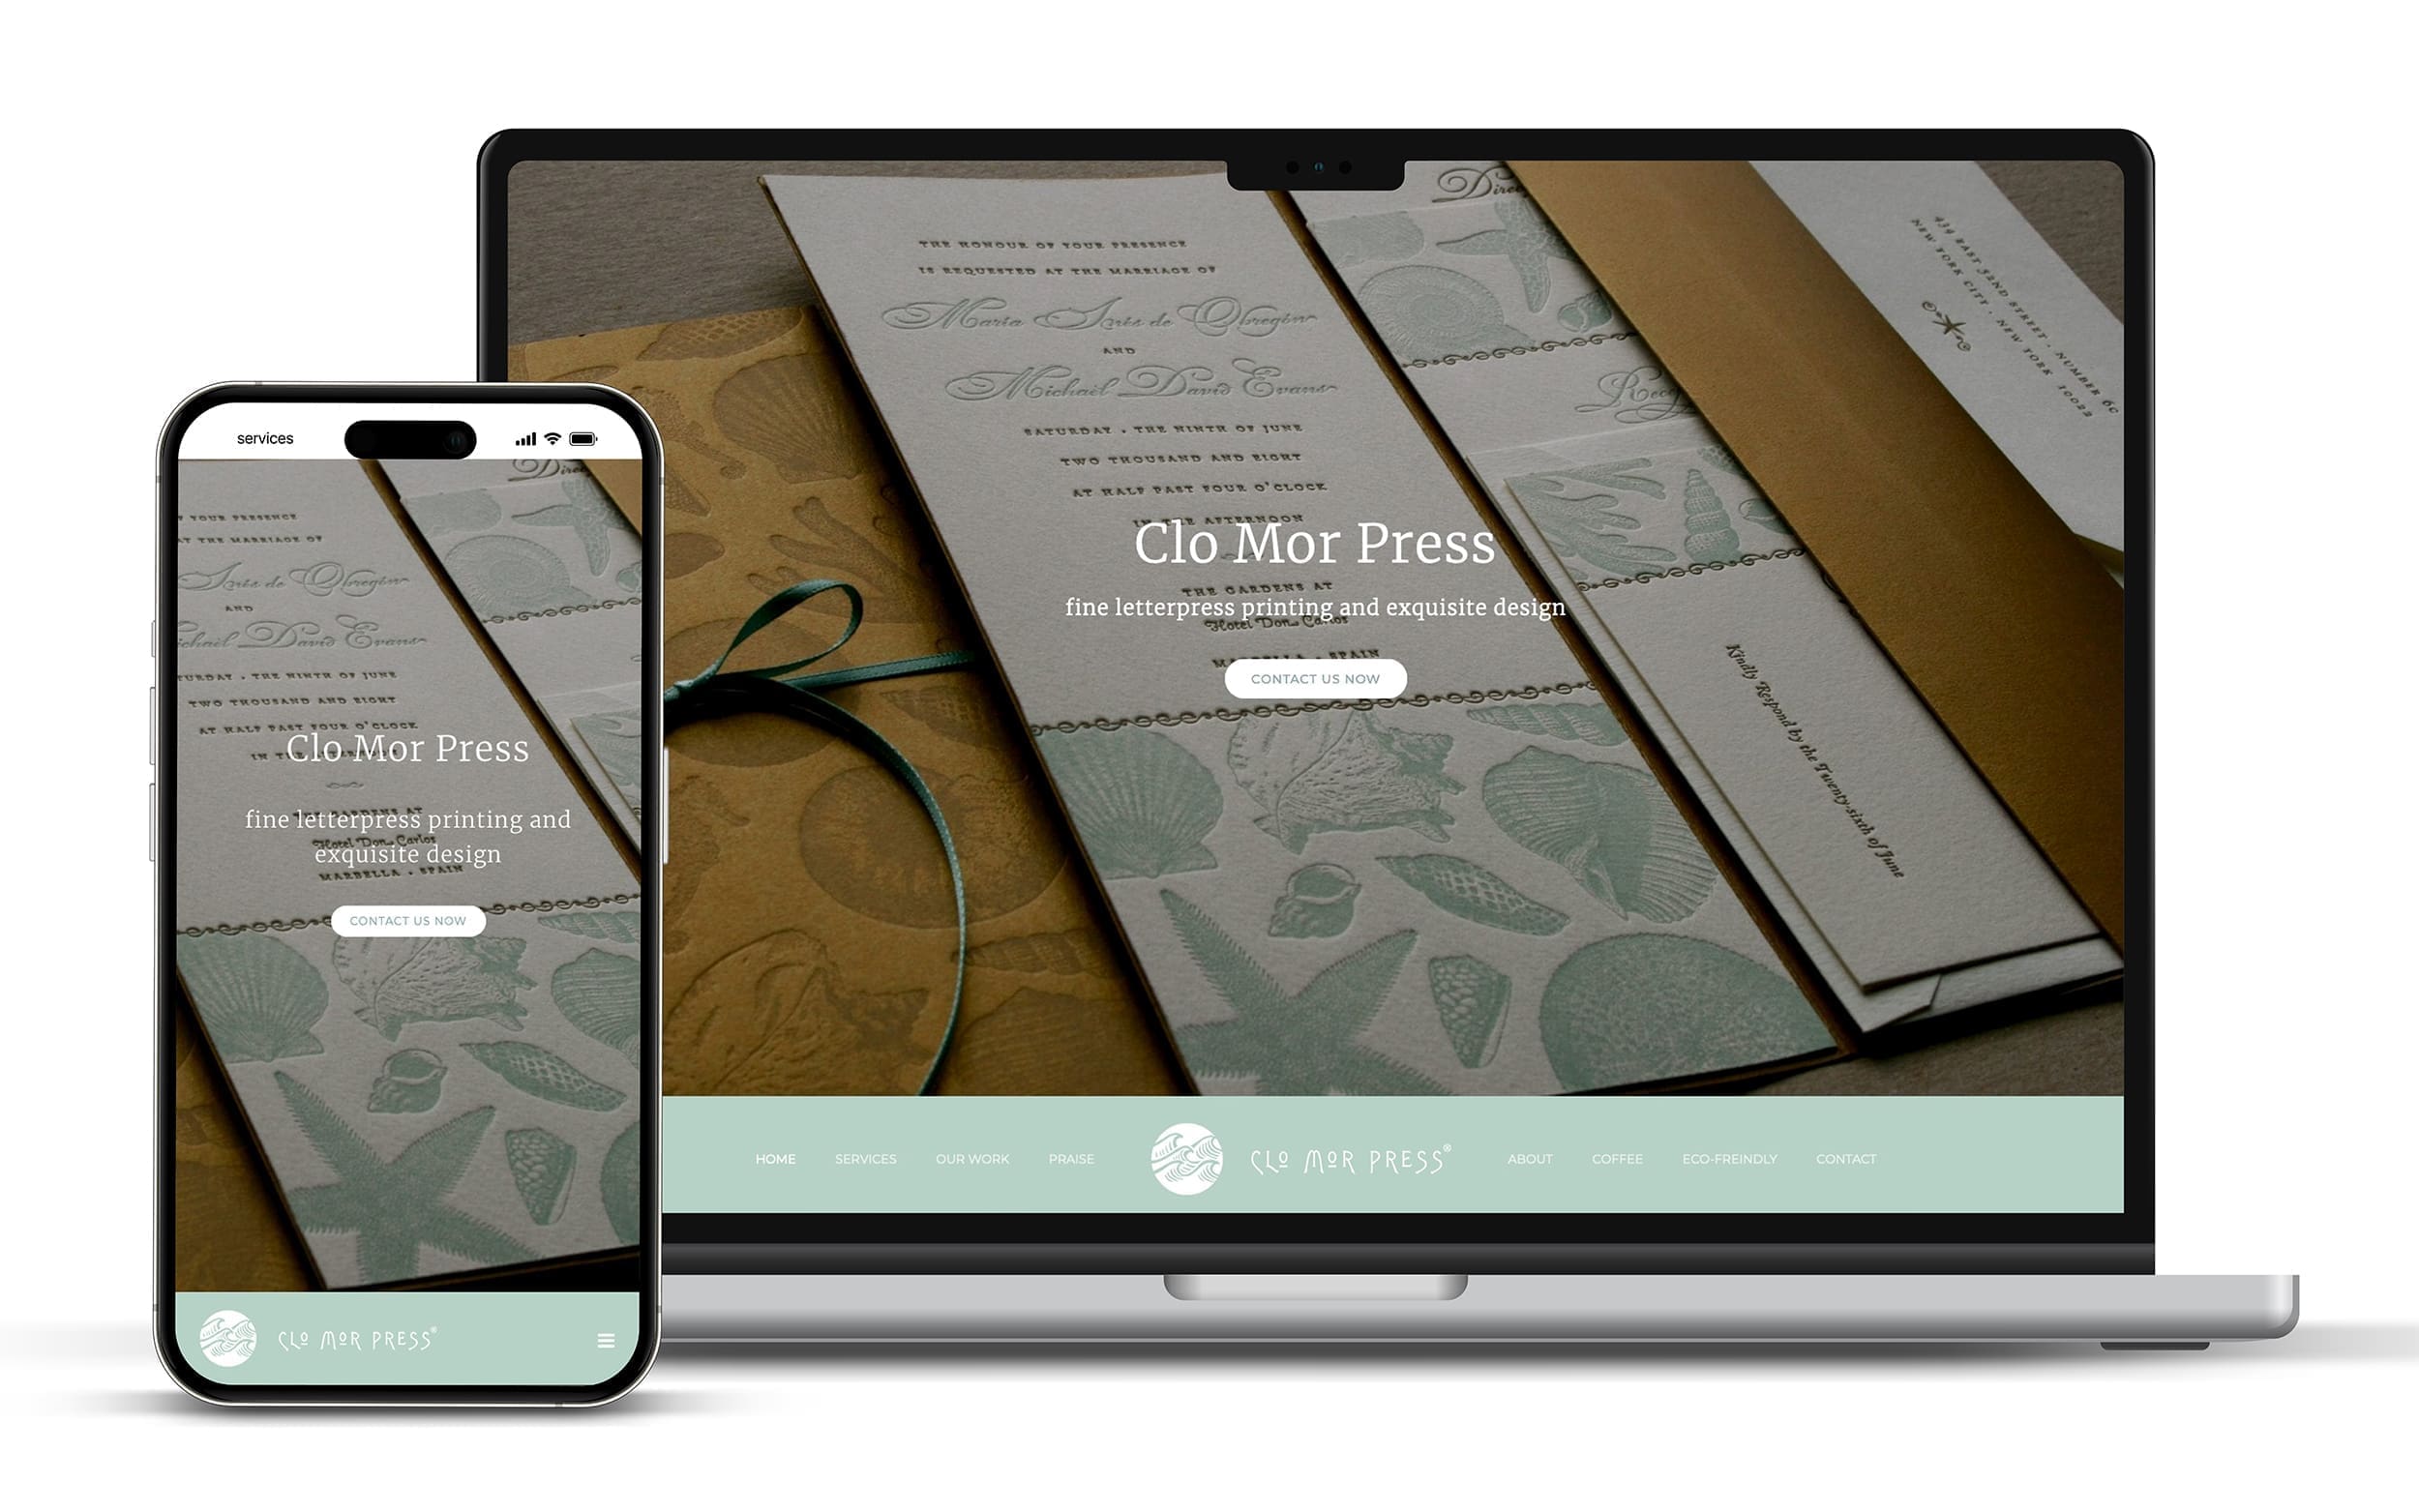 Clo Mor Press web site